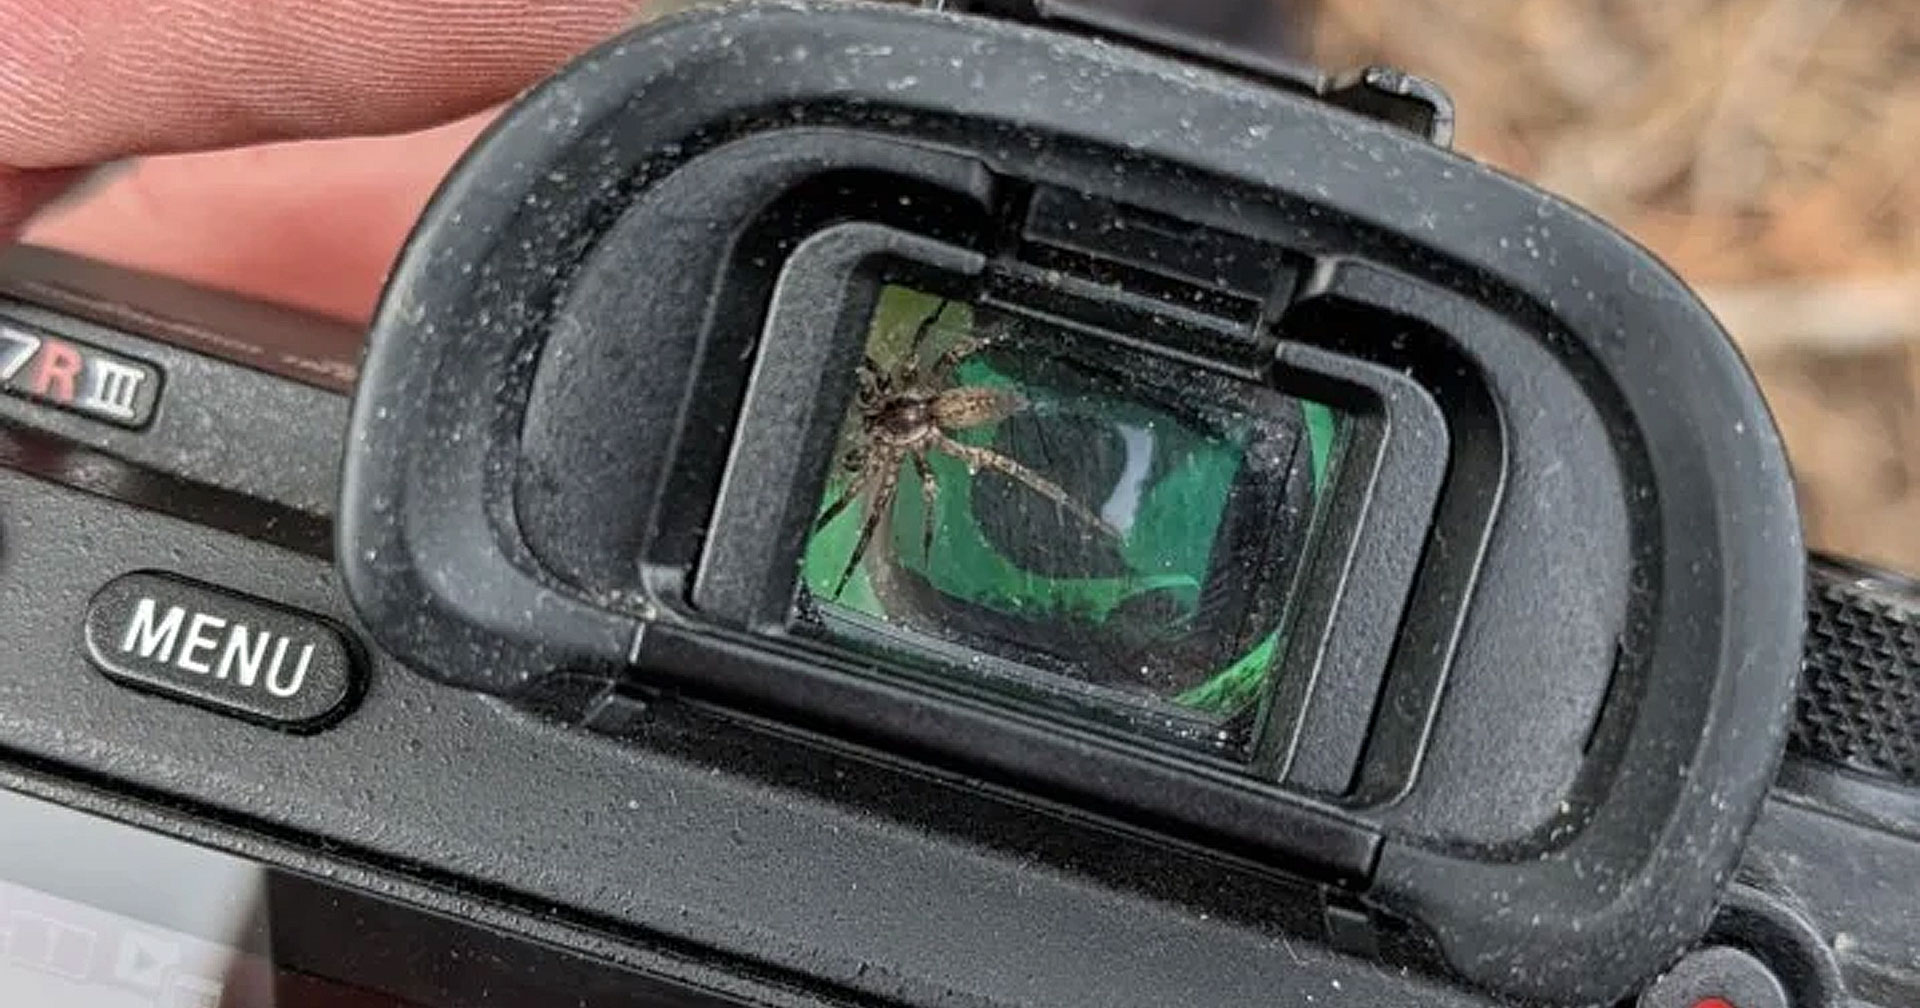 มาได้ไง! ช่างภาพชาวแคนาดา พบแมงมุมติดอยู่ในช่องมองภาพกล้อง Sony a7R III